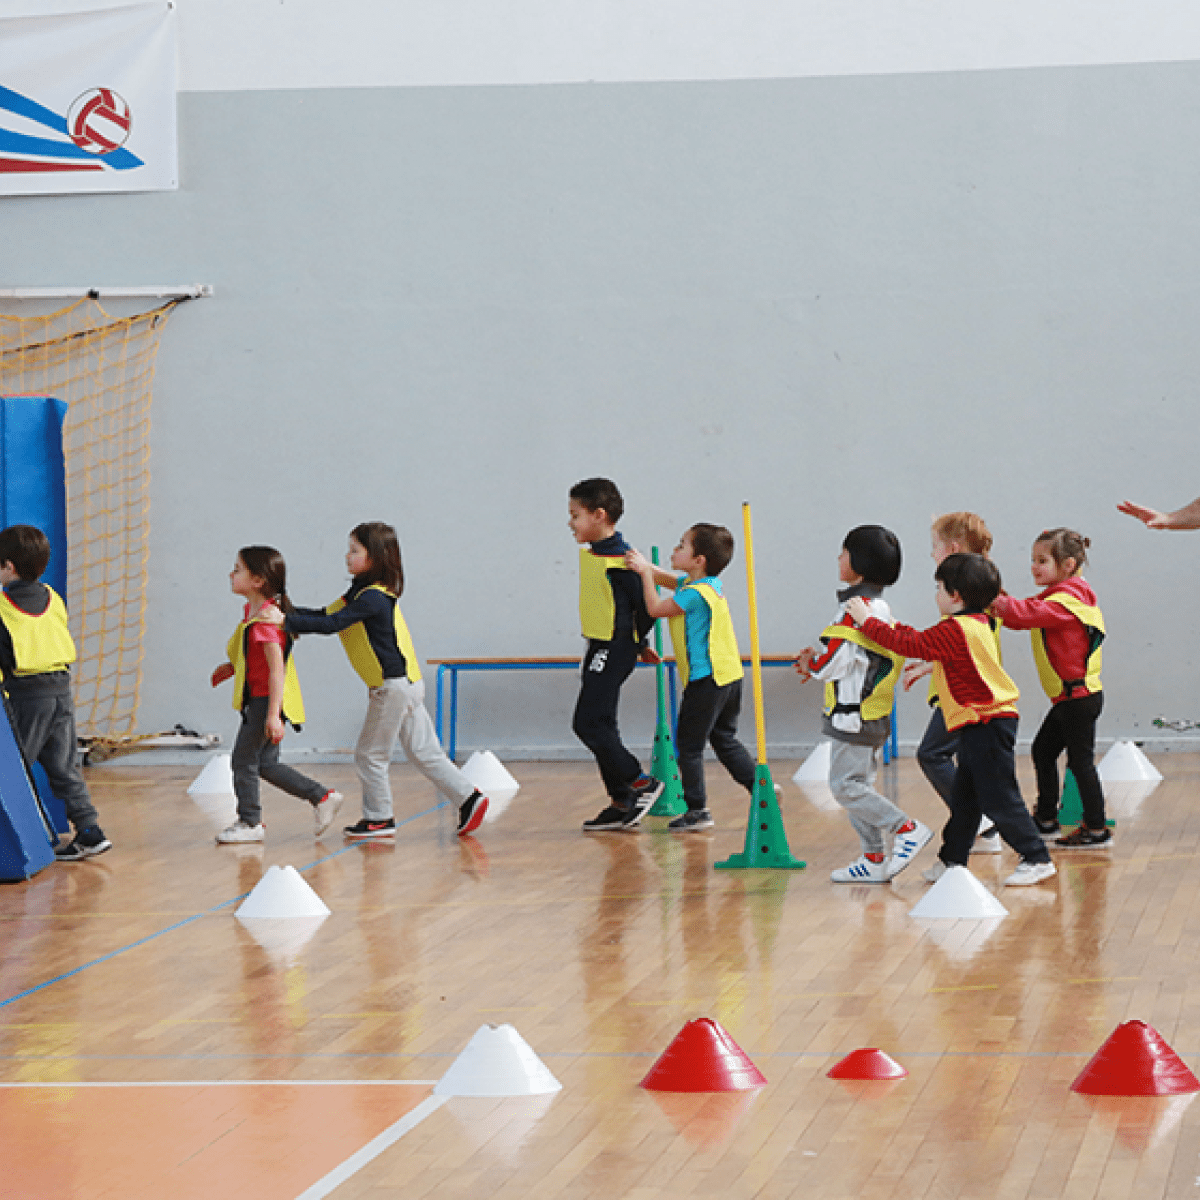 Le nouveau matériel de sport » École élémentaire publique de Saint